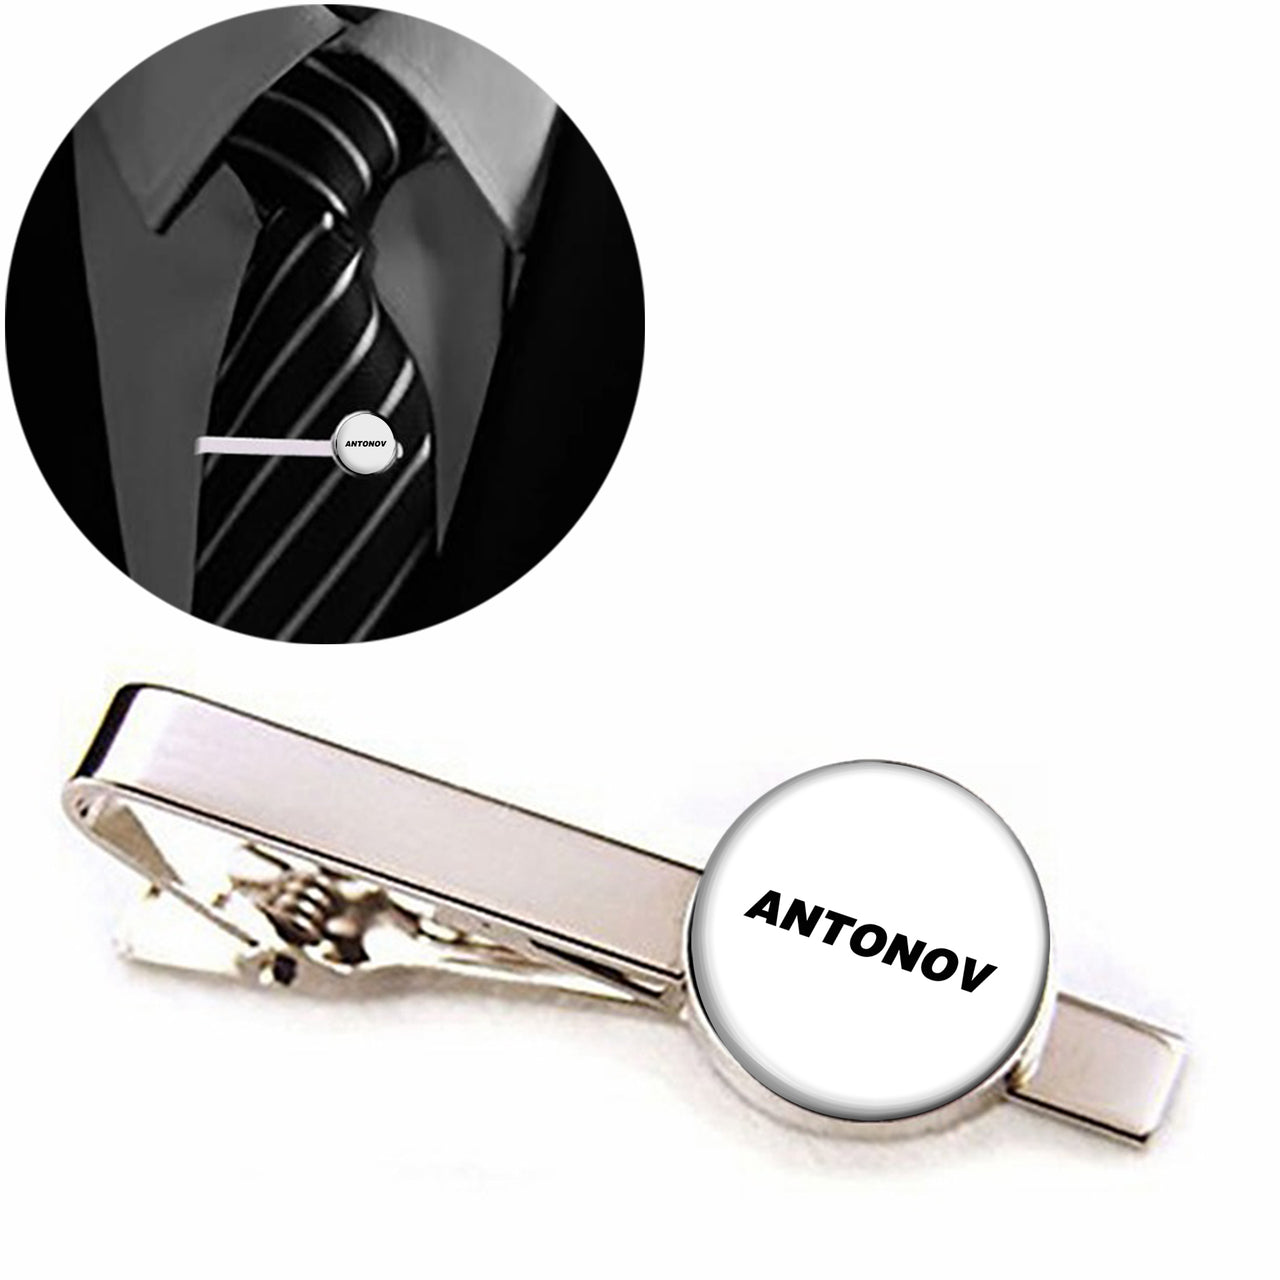 Antonov & Text Designed Tie Clips